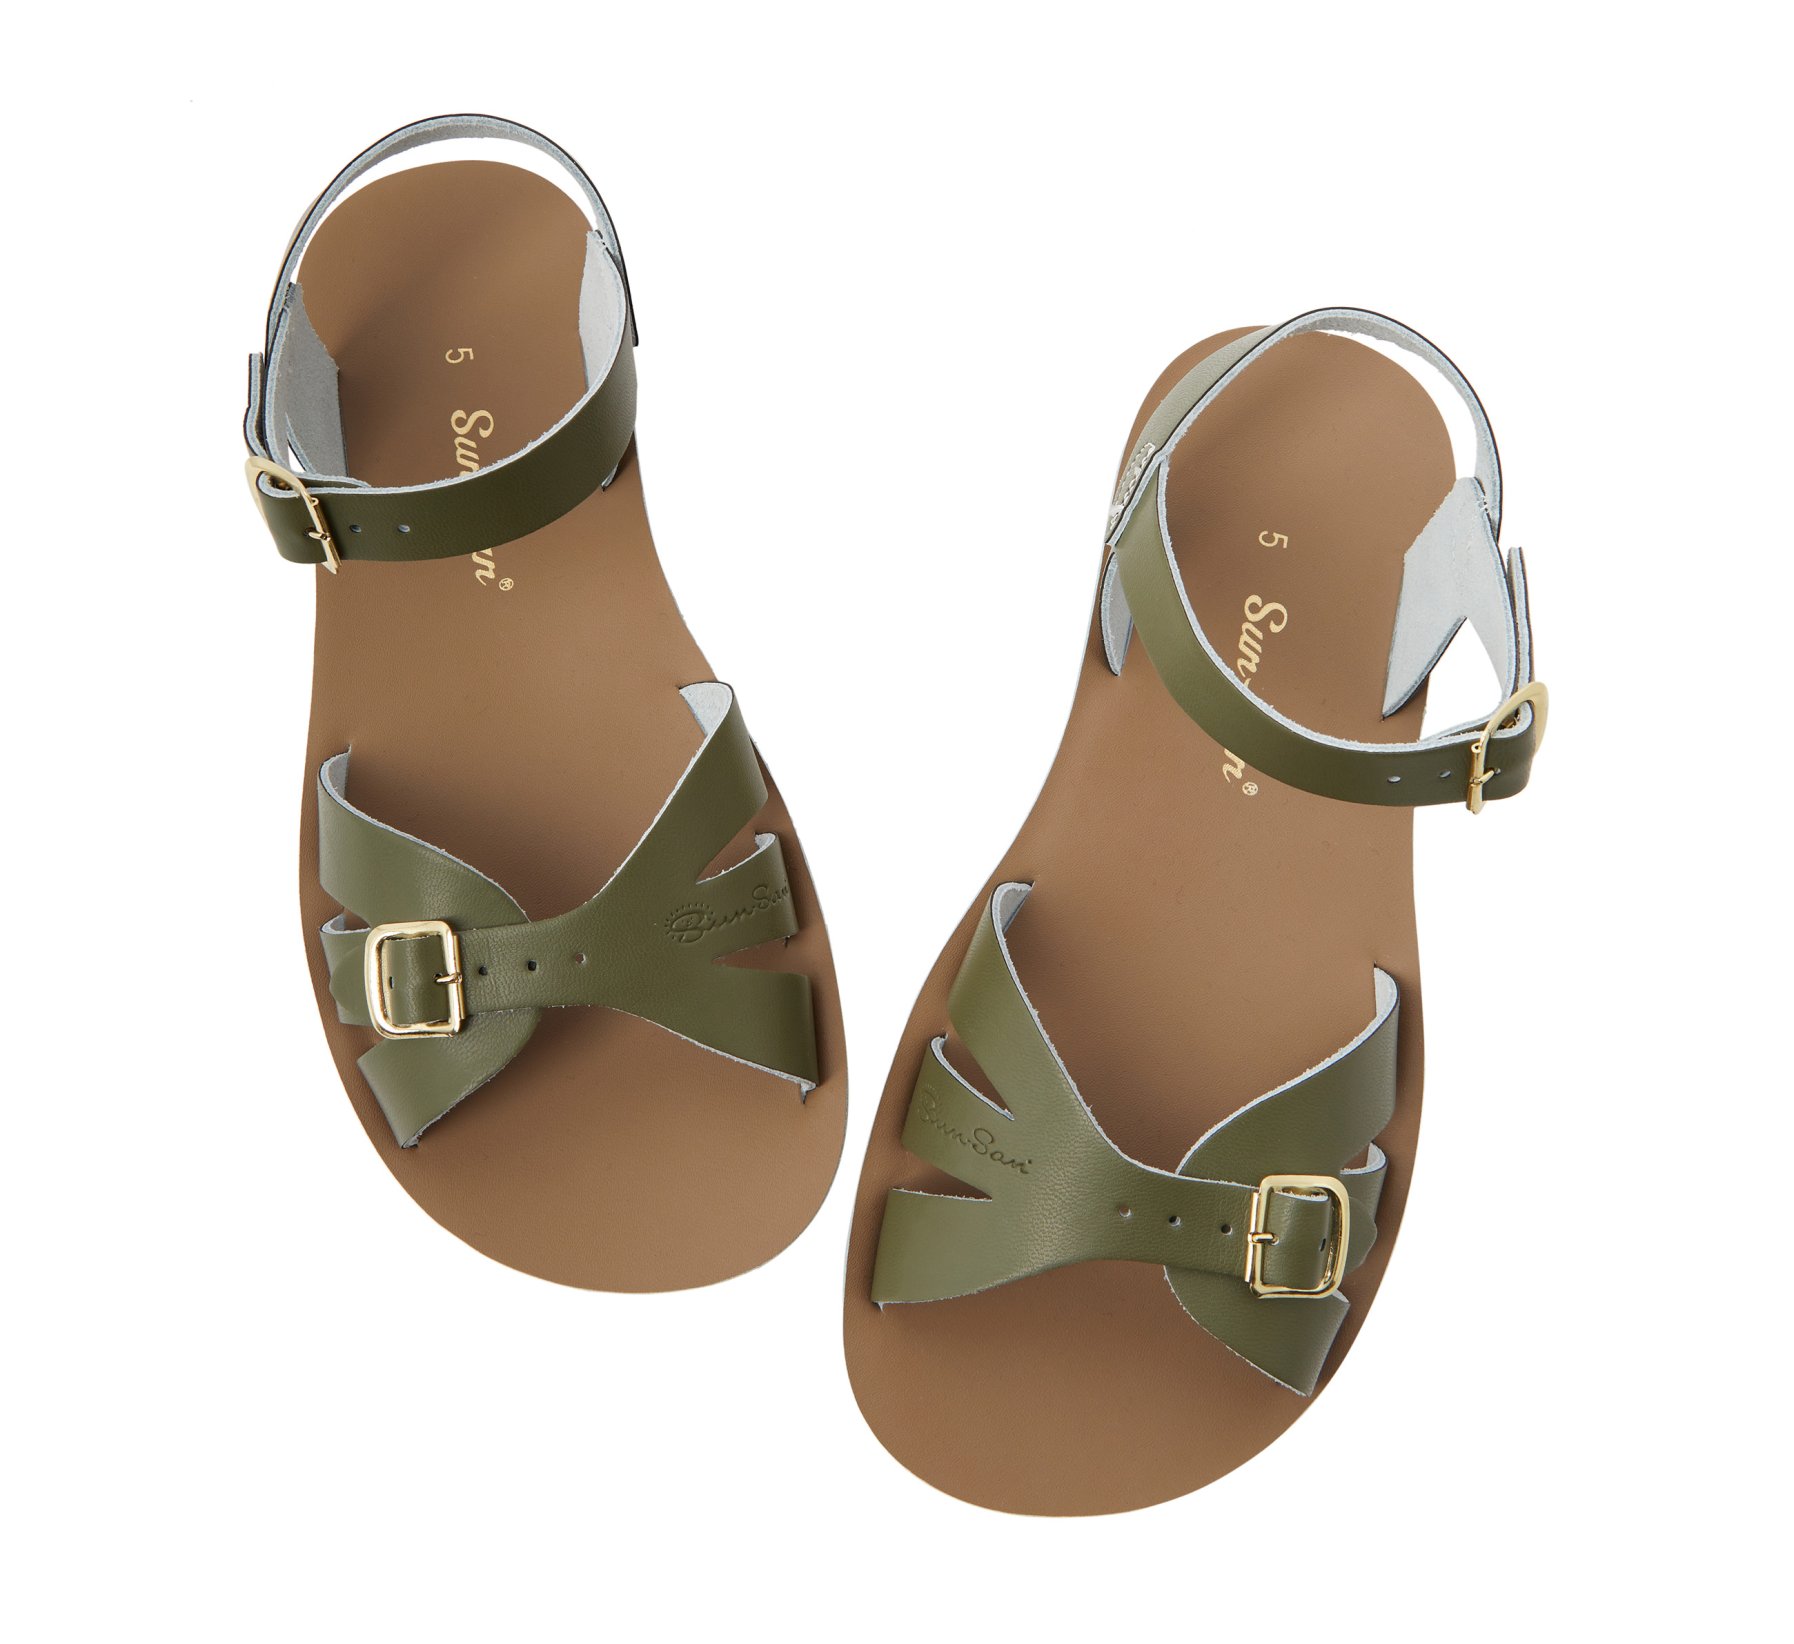 Boardwalk Olive Sandal - Salt Water Sandals